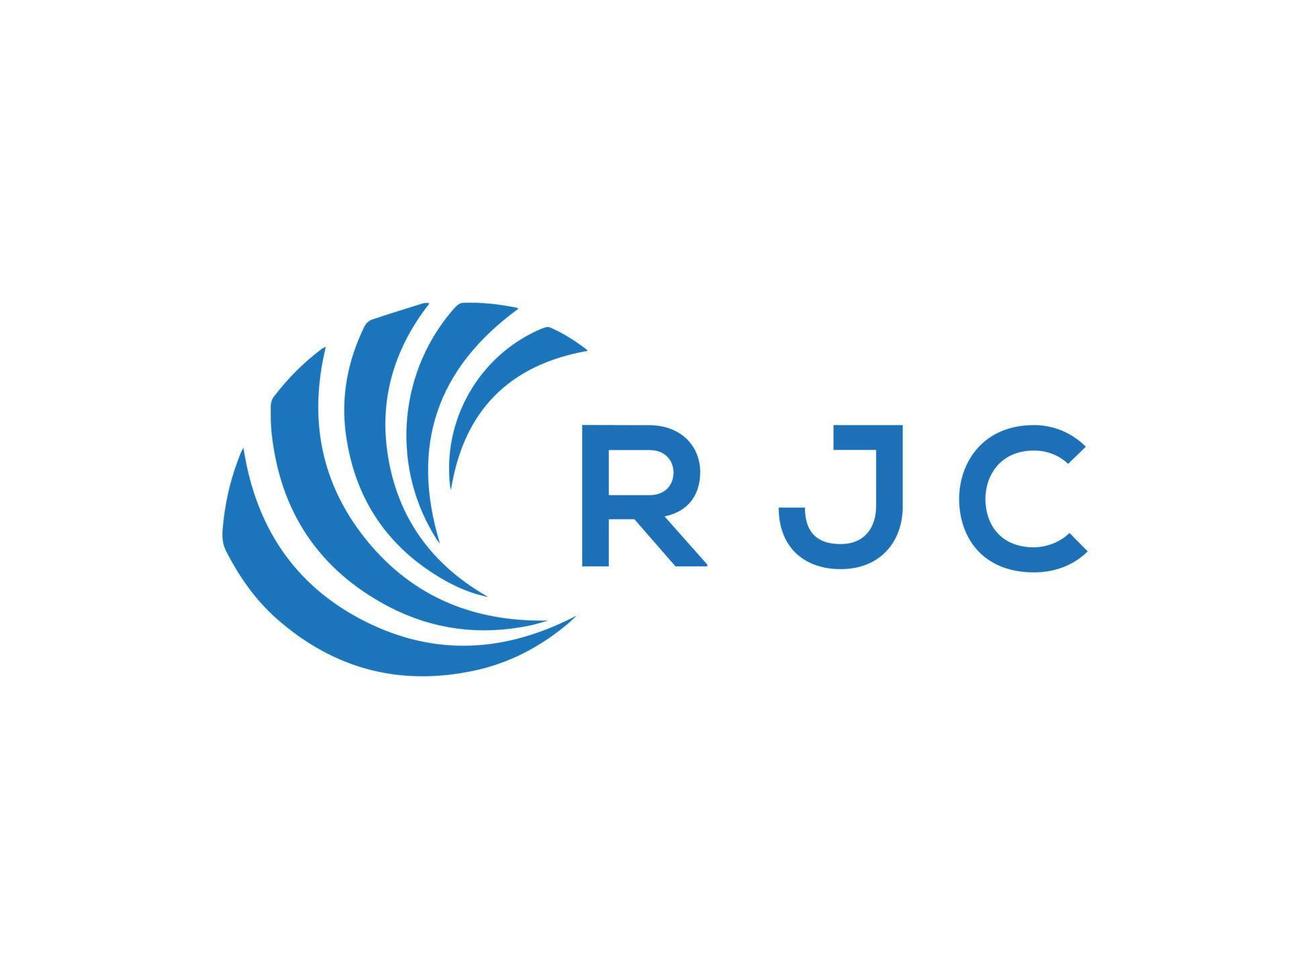 rjc Brief Logo Design auf Weiß Hintergrund. rjc kreativ Kreis Brief Logo Konzept. rjc Brief Design. vektor